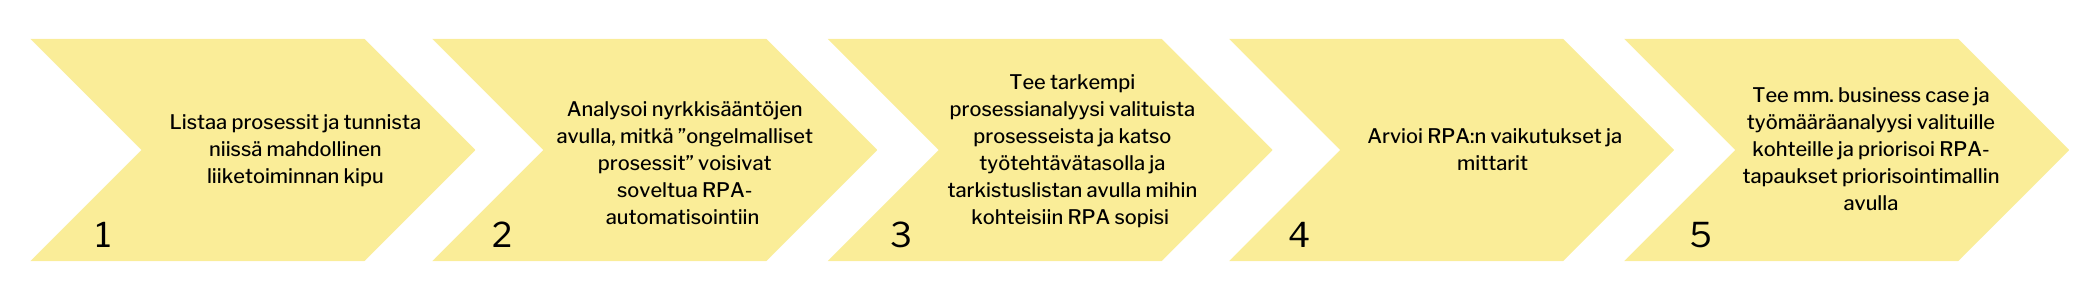 Kuva, jossa numeroituja nuolia vasemmalta oikealle, joiden sisällä tekstit: 1. Listaa prosessit ja tunnista niissä mahdollinen liiketoiminnan kipu. 2. Analysoi nyrkkisääntöjen avulla, mitkä ”ongelmalliset prosessit” voisivat soveltua RPA-automatisointiin. 3. Tee tarkempi prosessianalyysi valituista prosesseista ja katso työtehtävätasolla ja tarkistuslistan avulla mihin kohteisiin RPA sopisi. 4. Arvioi RPA:n vaikutukset ja mittarit. 5. Tee mm. business case ja työmääräanalyysi valituille kohteille ja priorisoi RPA-tapaukset priorisointimallin avulla.